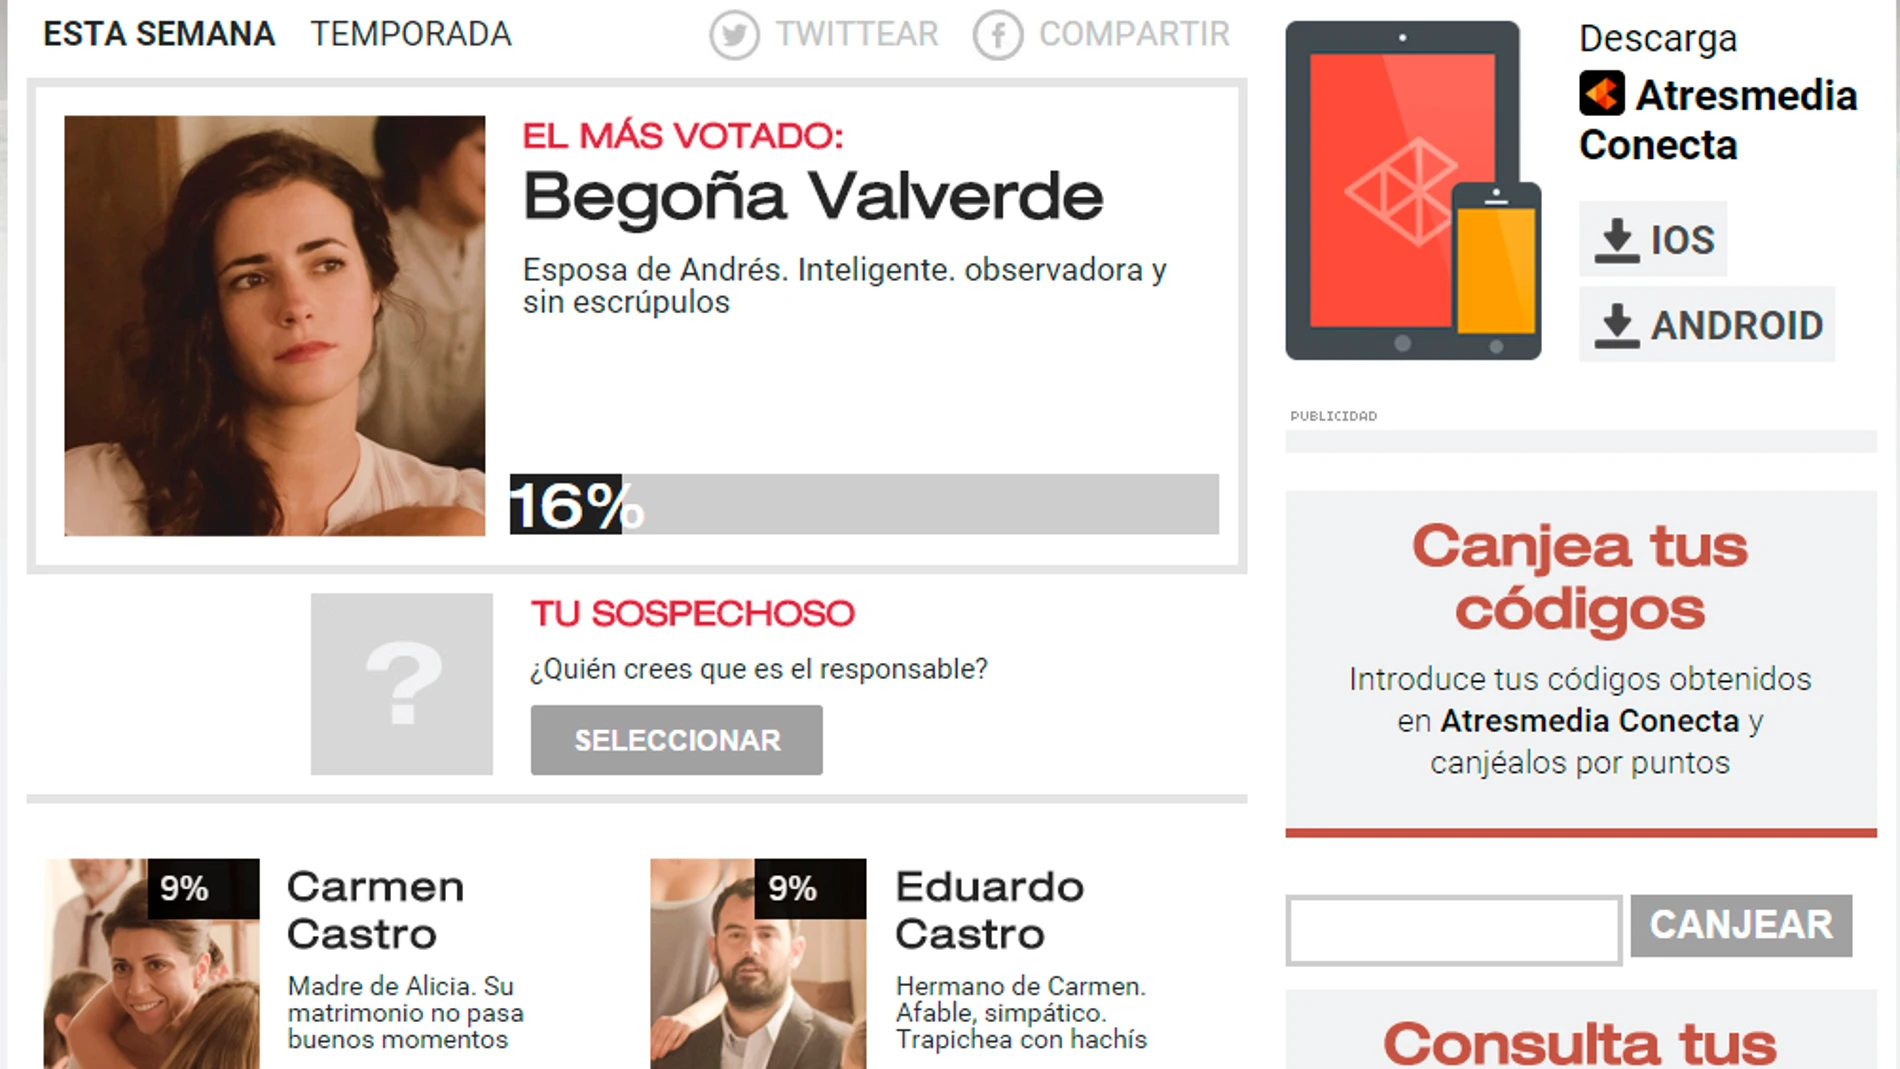 Begoña Valverde es la sospechosa más votada